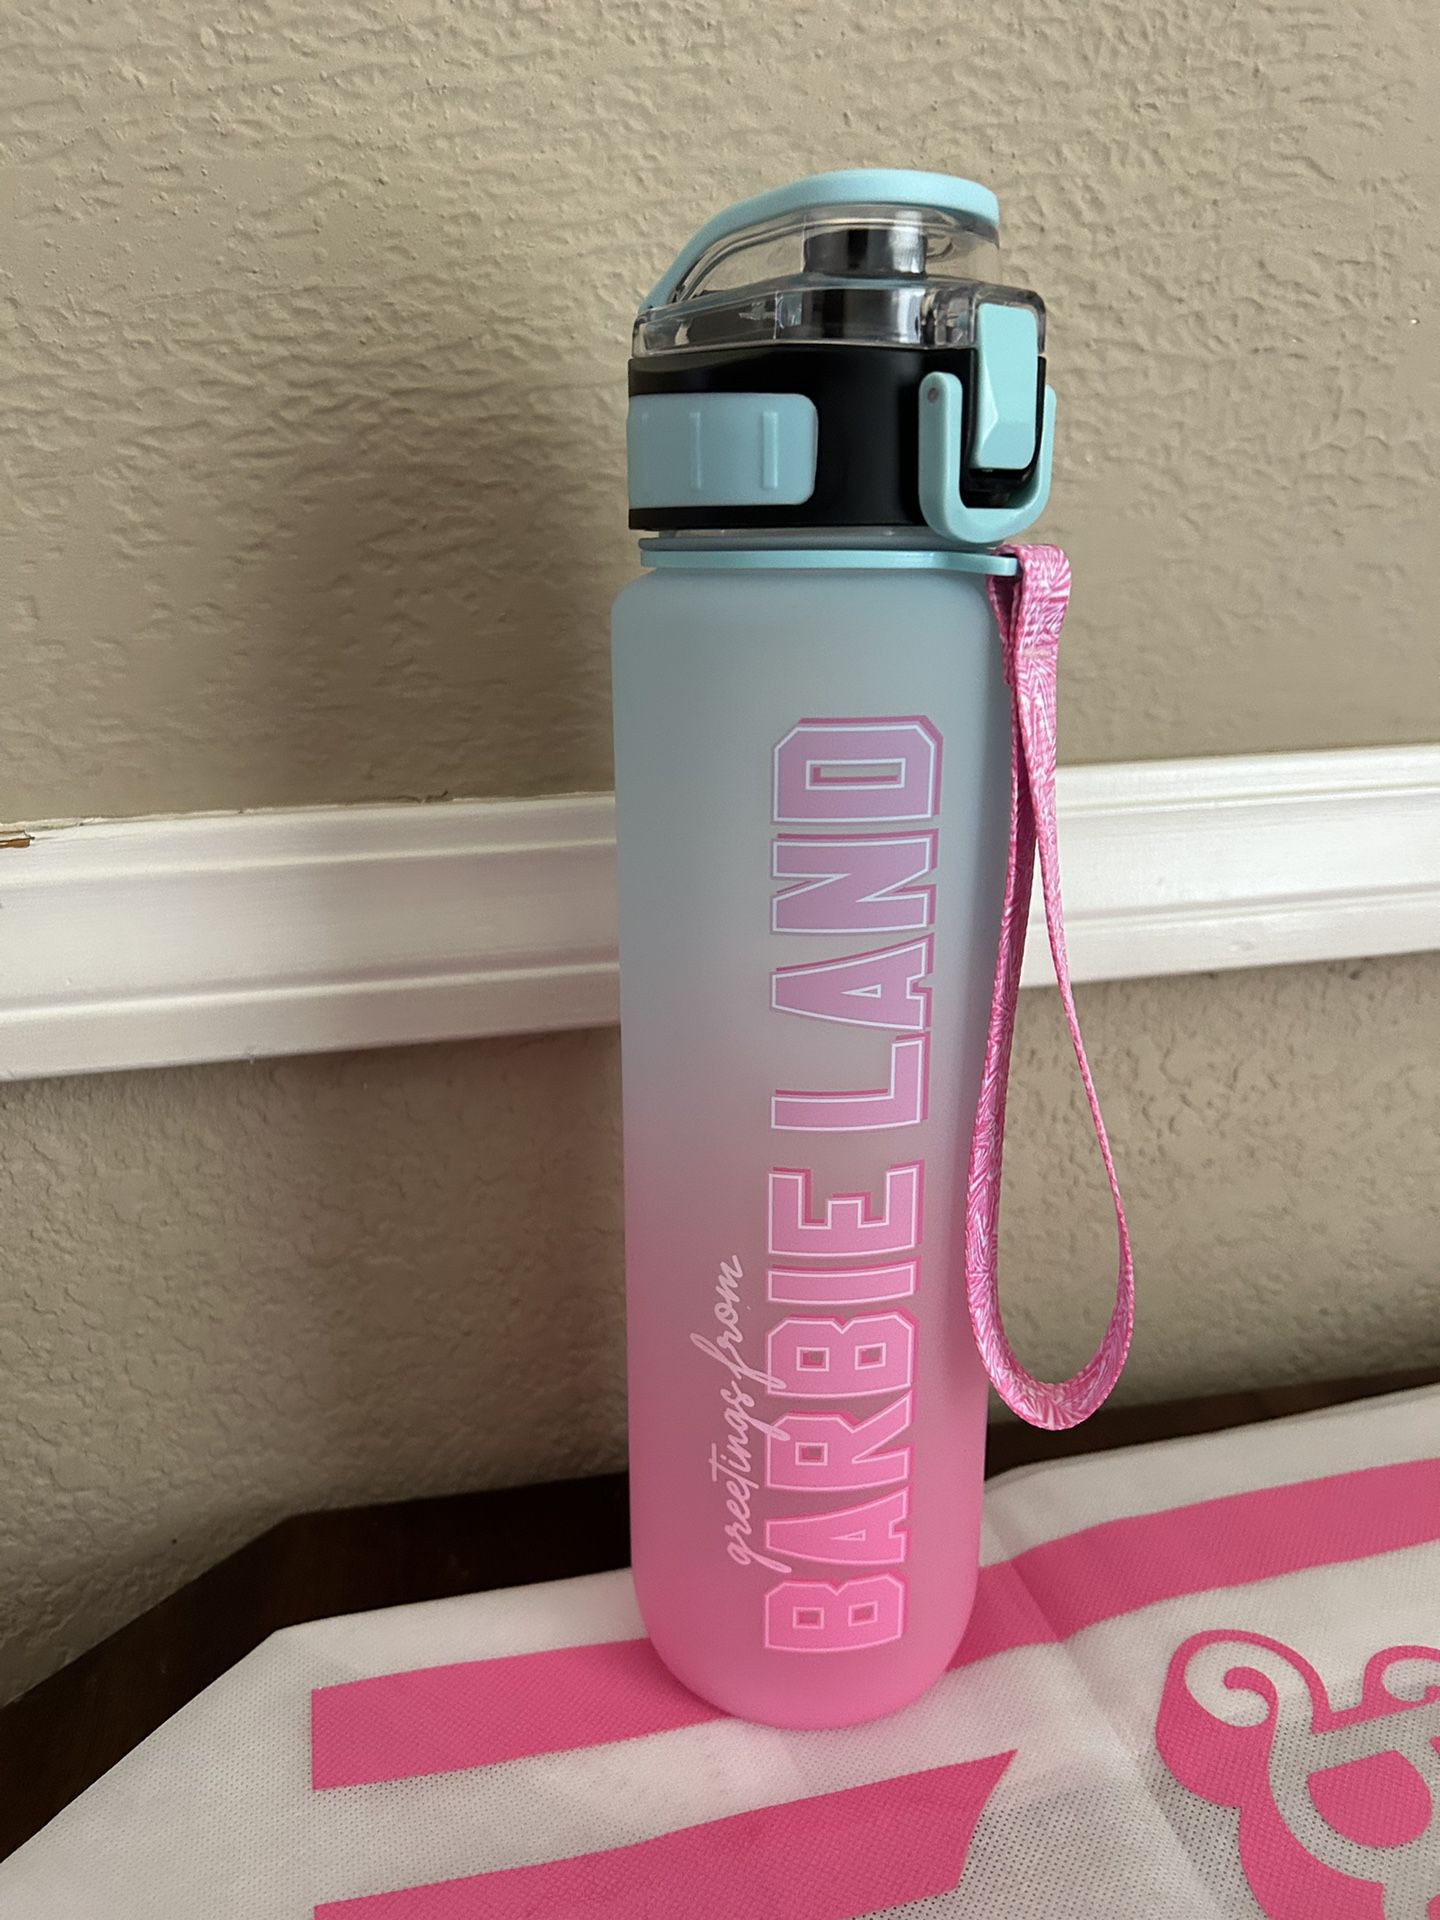 Barbie Water Bottle 